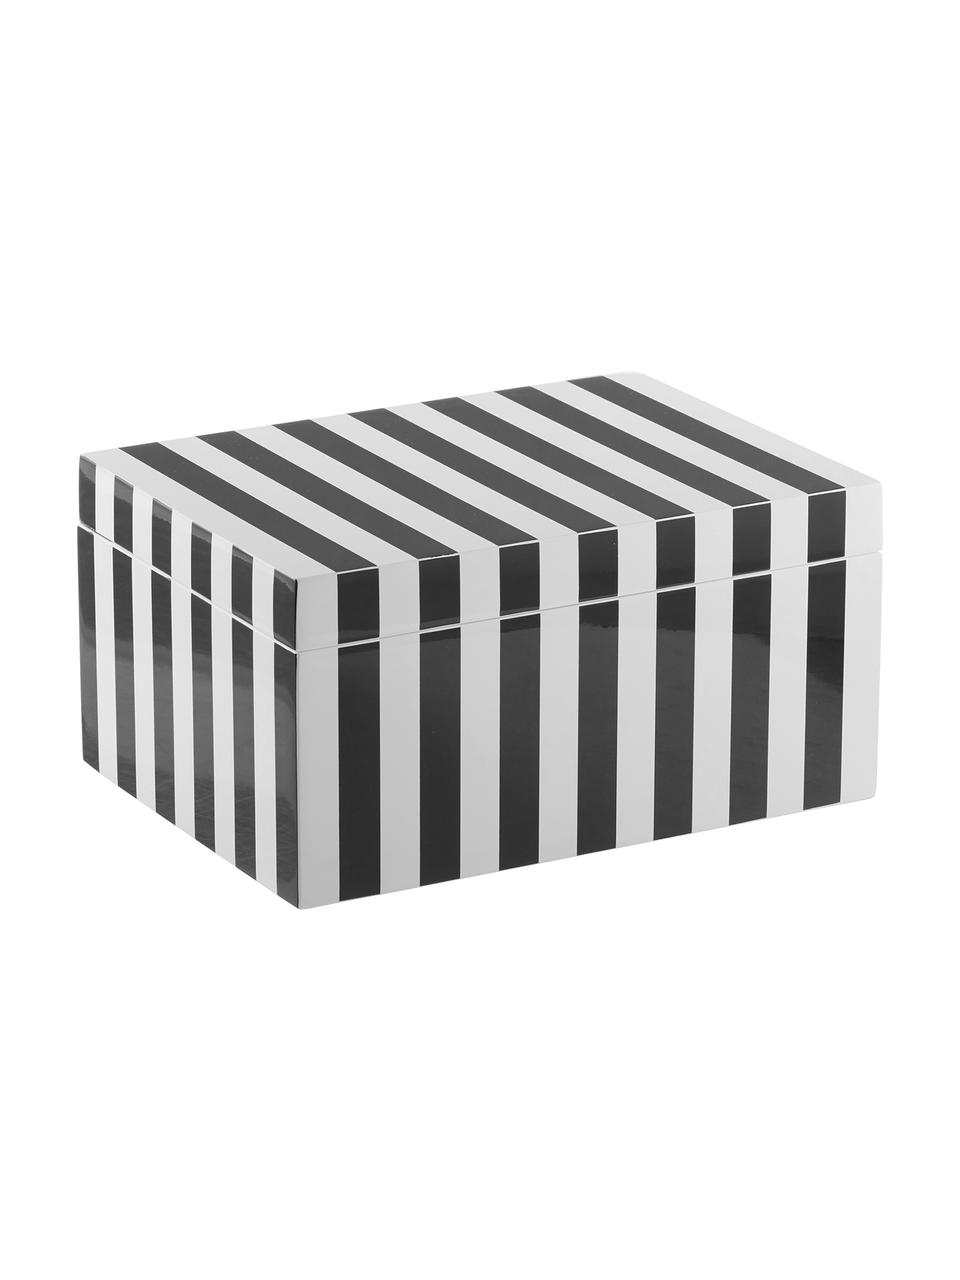 Schmuckbox Taylor mit Spiegel, Kästchen: Mitteldichte Holzfaserpla, Unterseite: Samt zur Schonung der Möb, Schwarz/Weiß gestreift, B 26 x H 13 cm